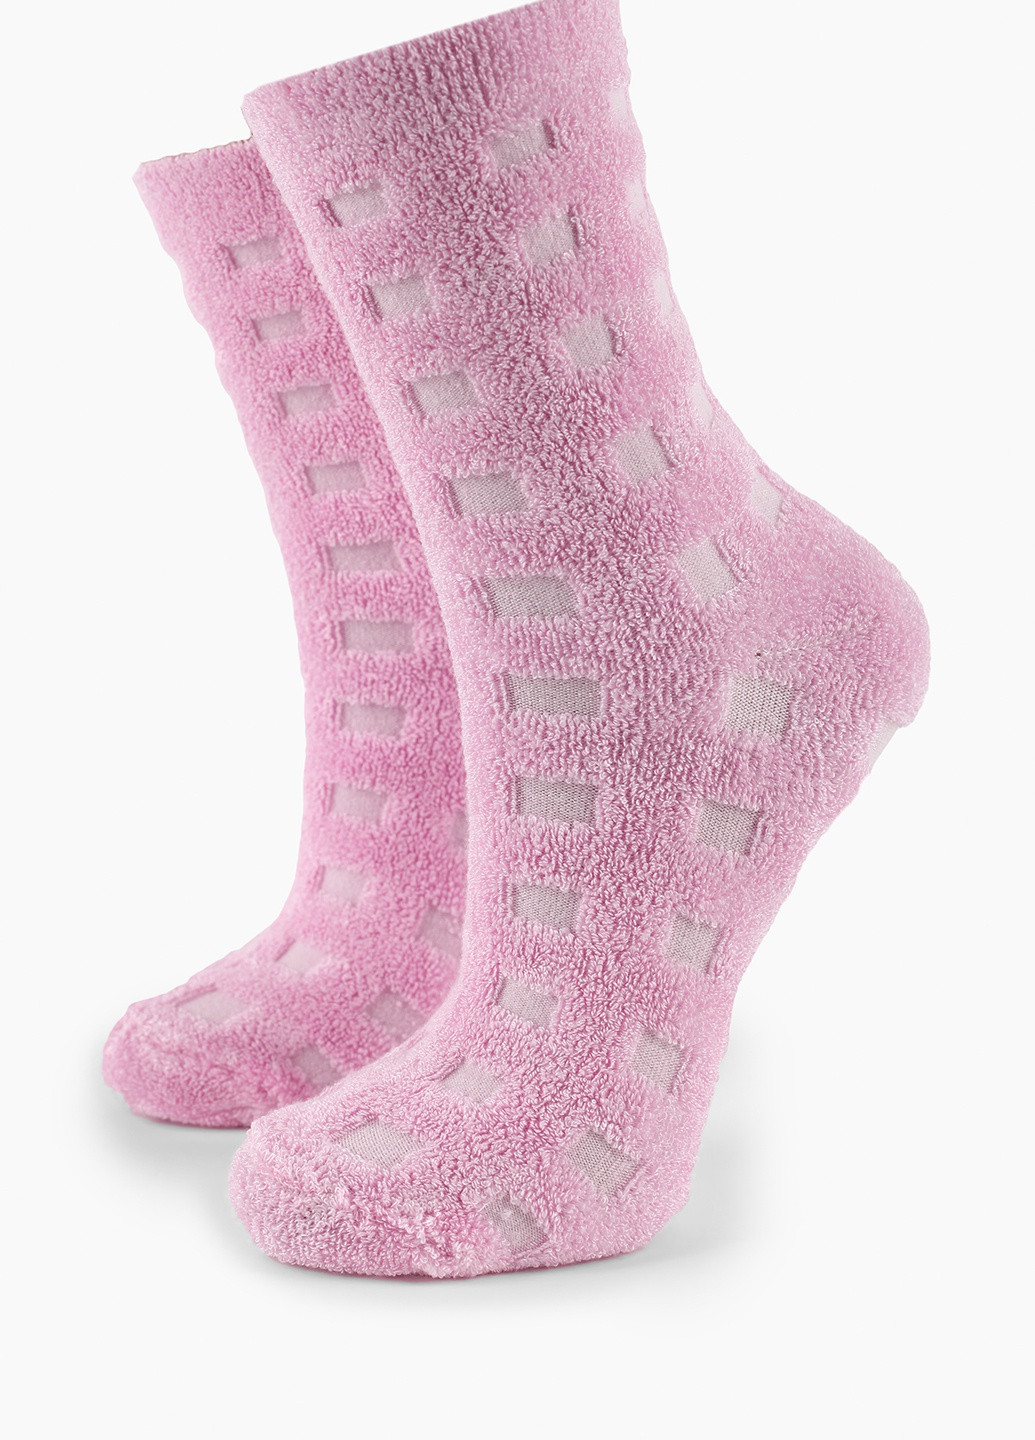 Носки Ceburashka розовые повседневные